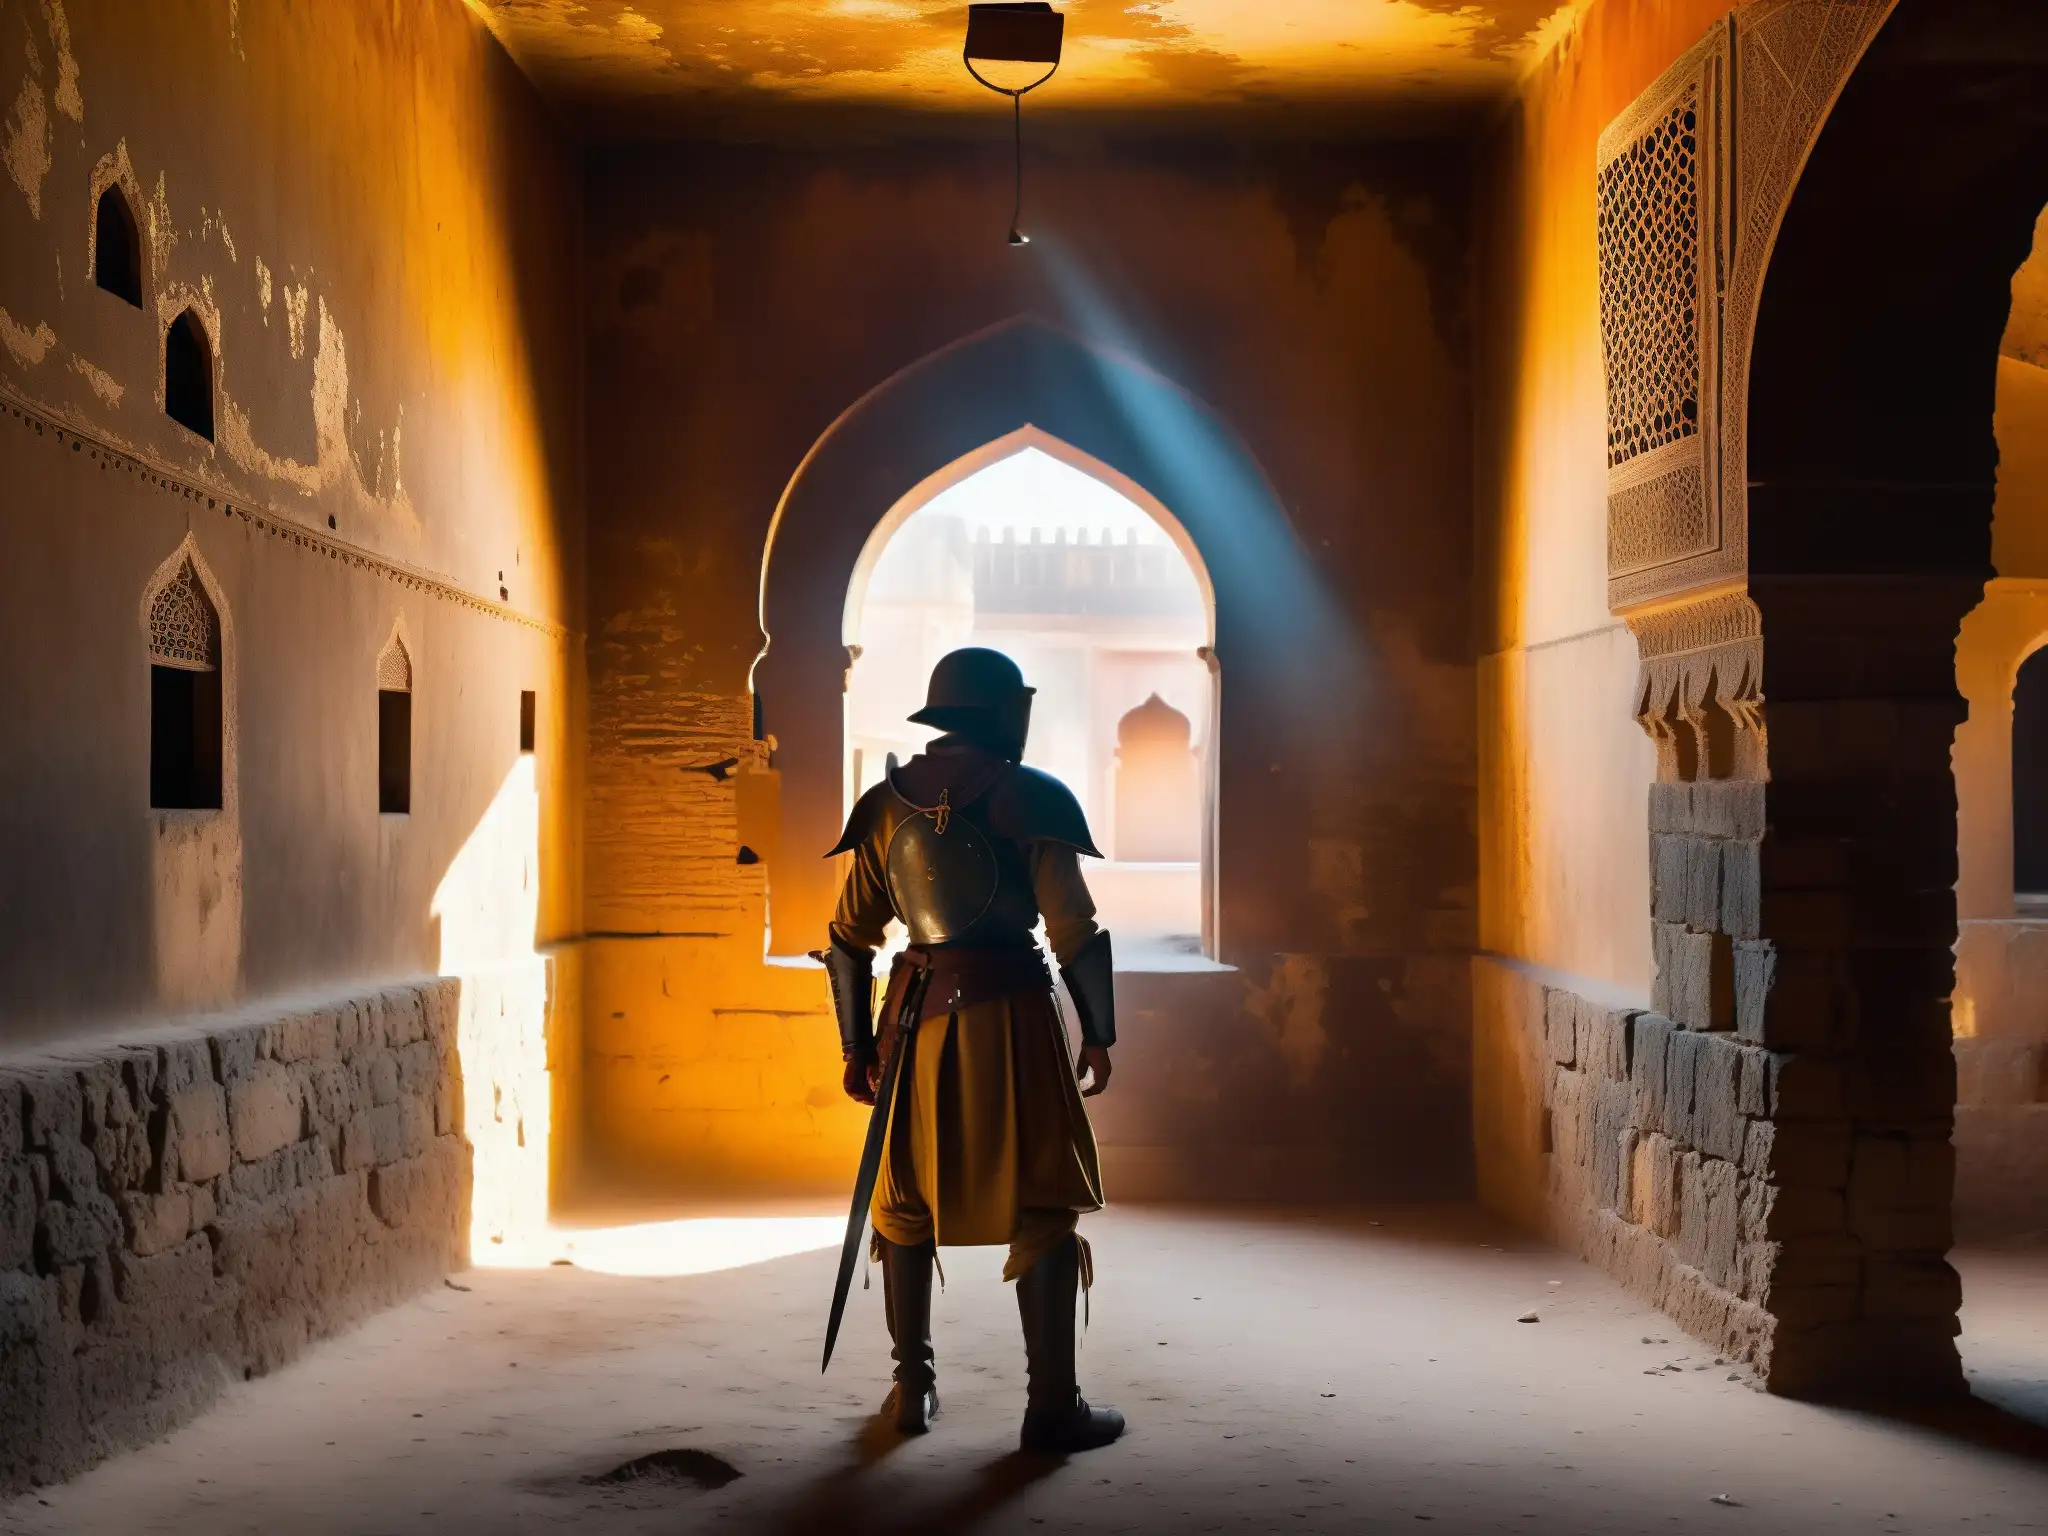 En el antiguo fuerte de Jaipur, una habitación abandonada con una luz tenue revela un misterioso traje de armadura entre sombras y polvo